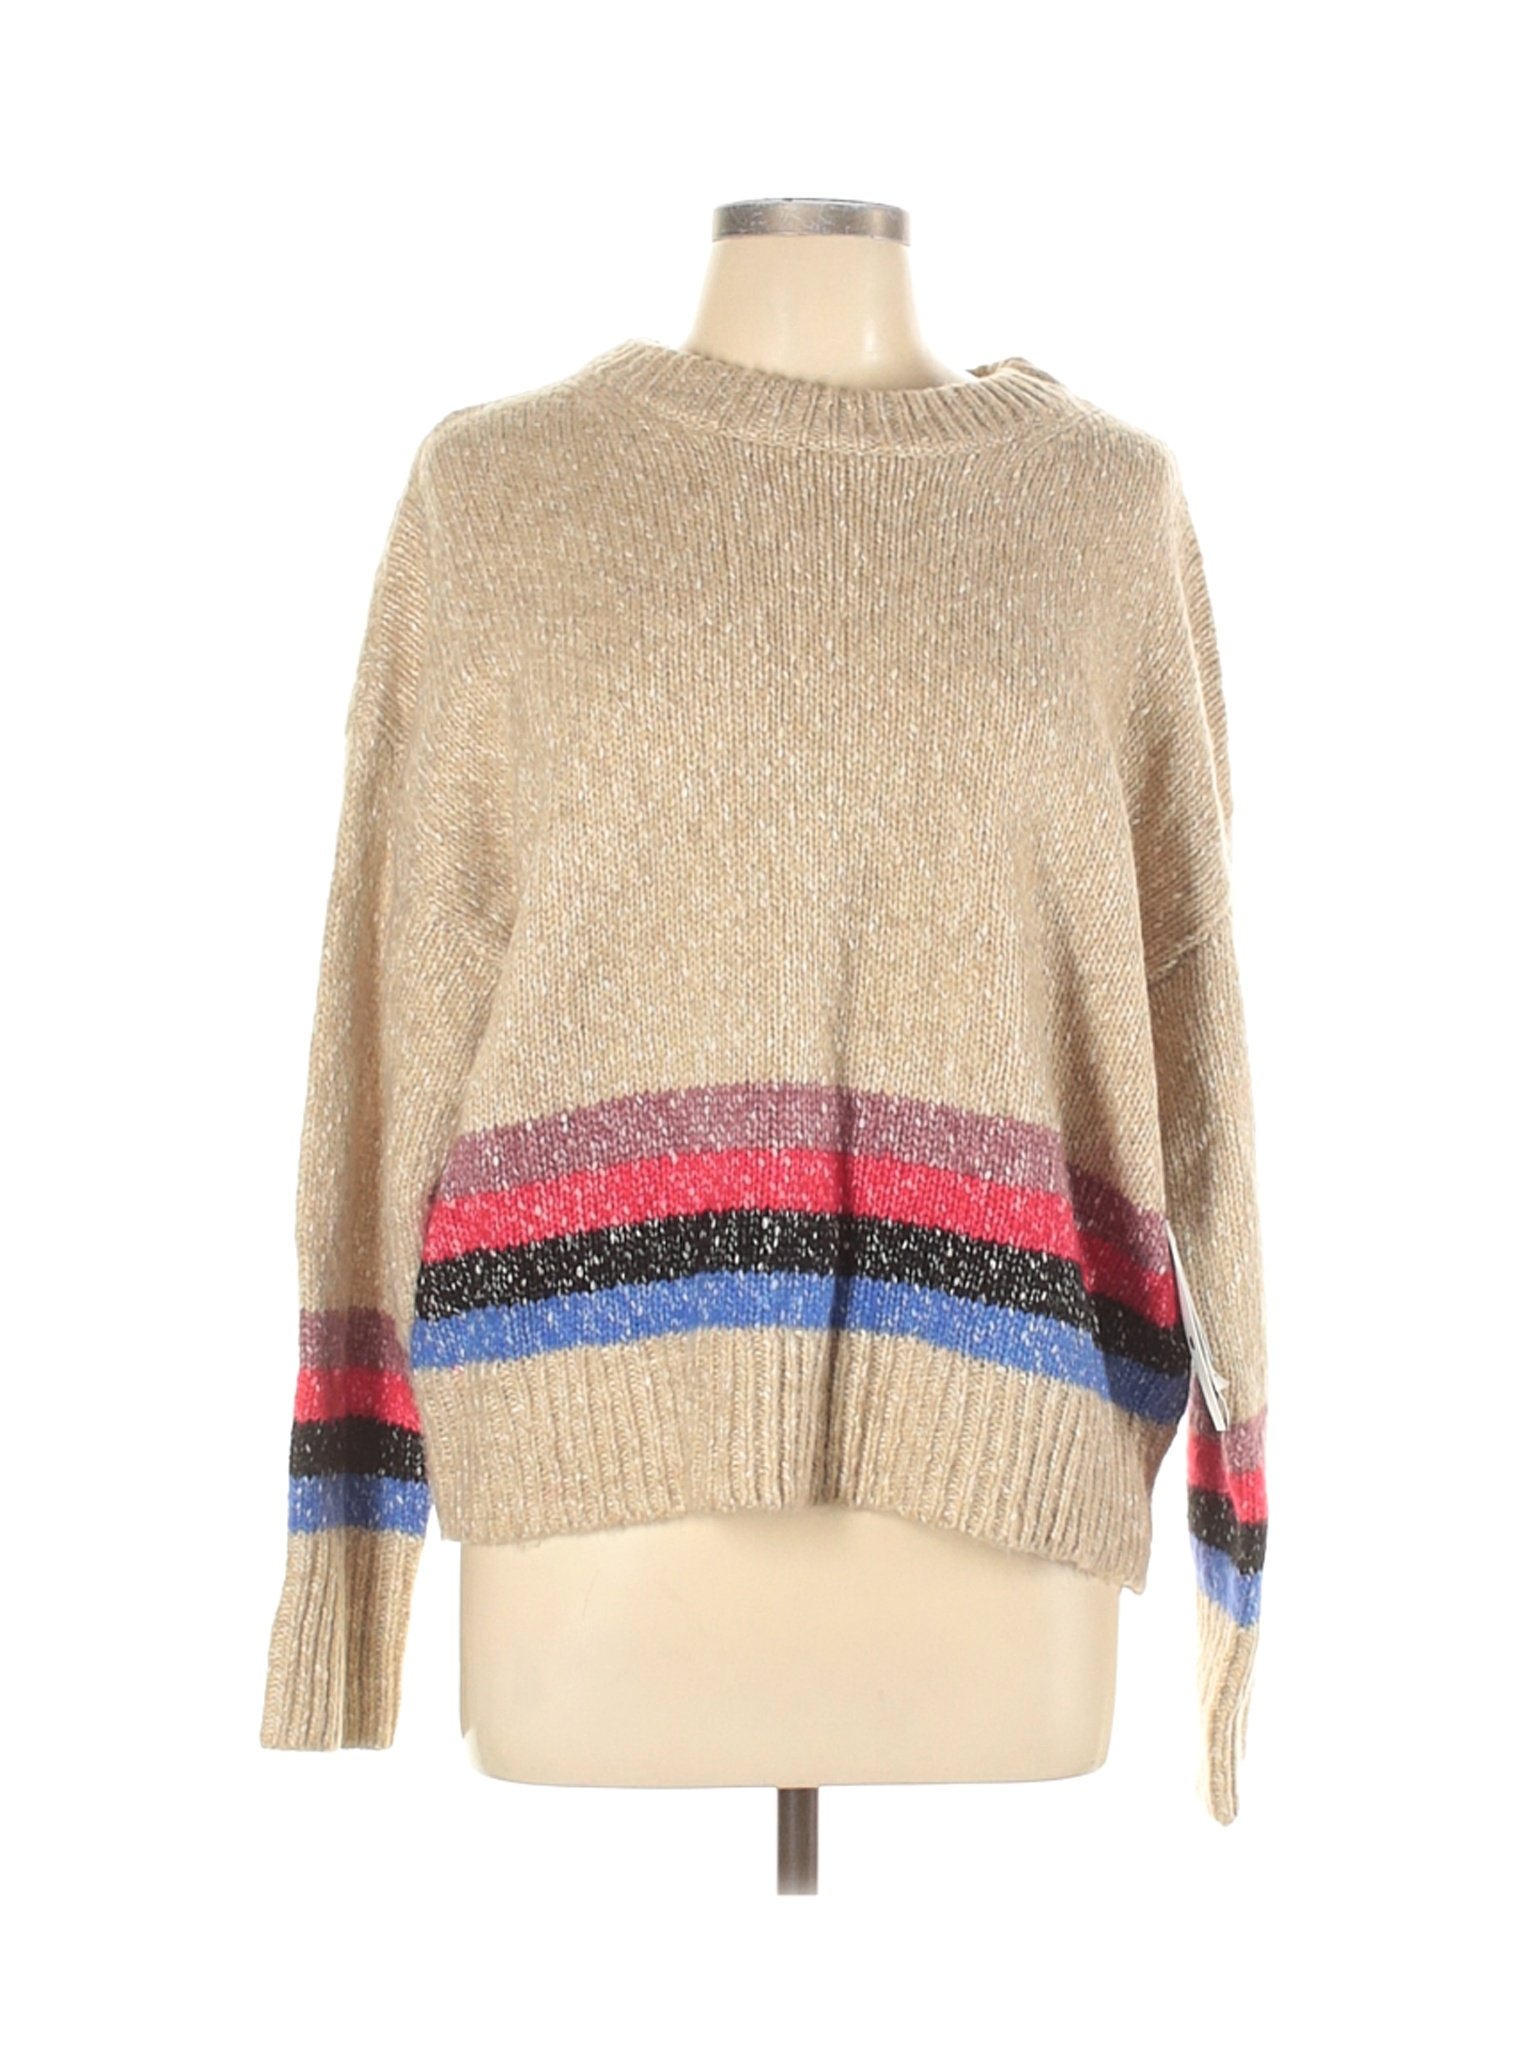 NWT Treasure & Bond Women Brown Pullover Sweater L | eBay